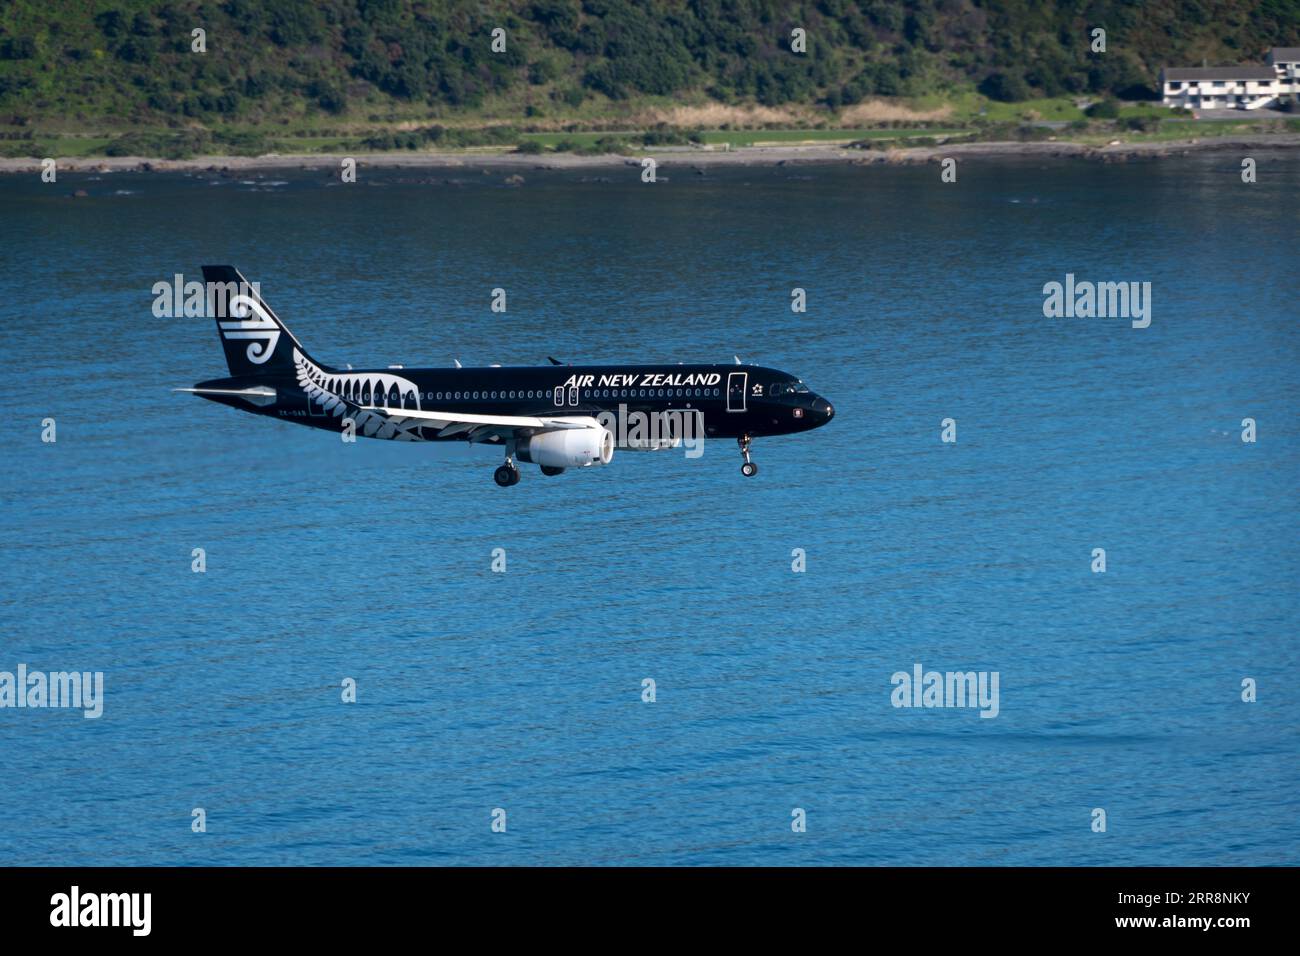 Avion approchant de l'aéroport de Wellington, Île du Nord, Nouvelle-Zélande Banque D'Images